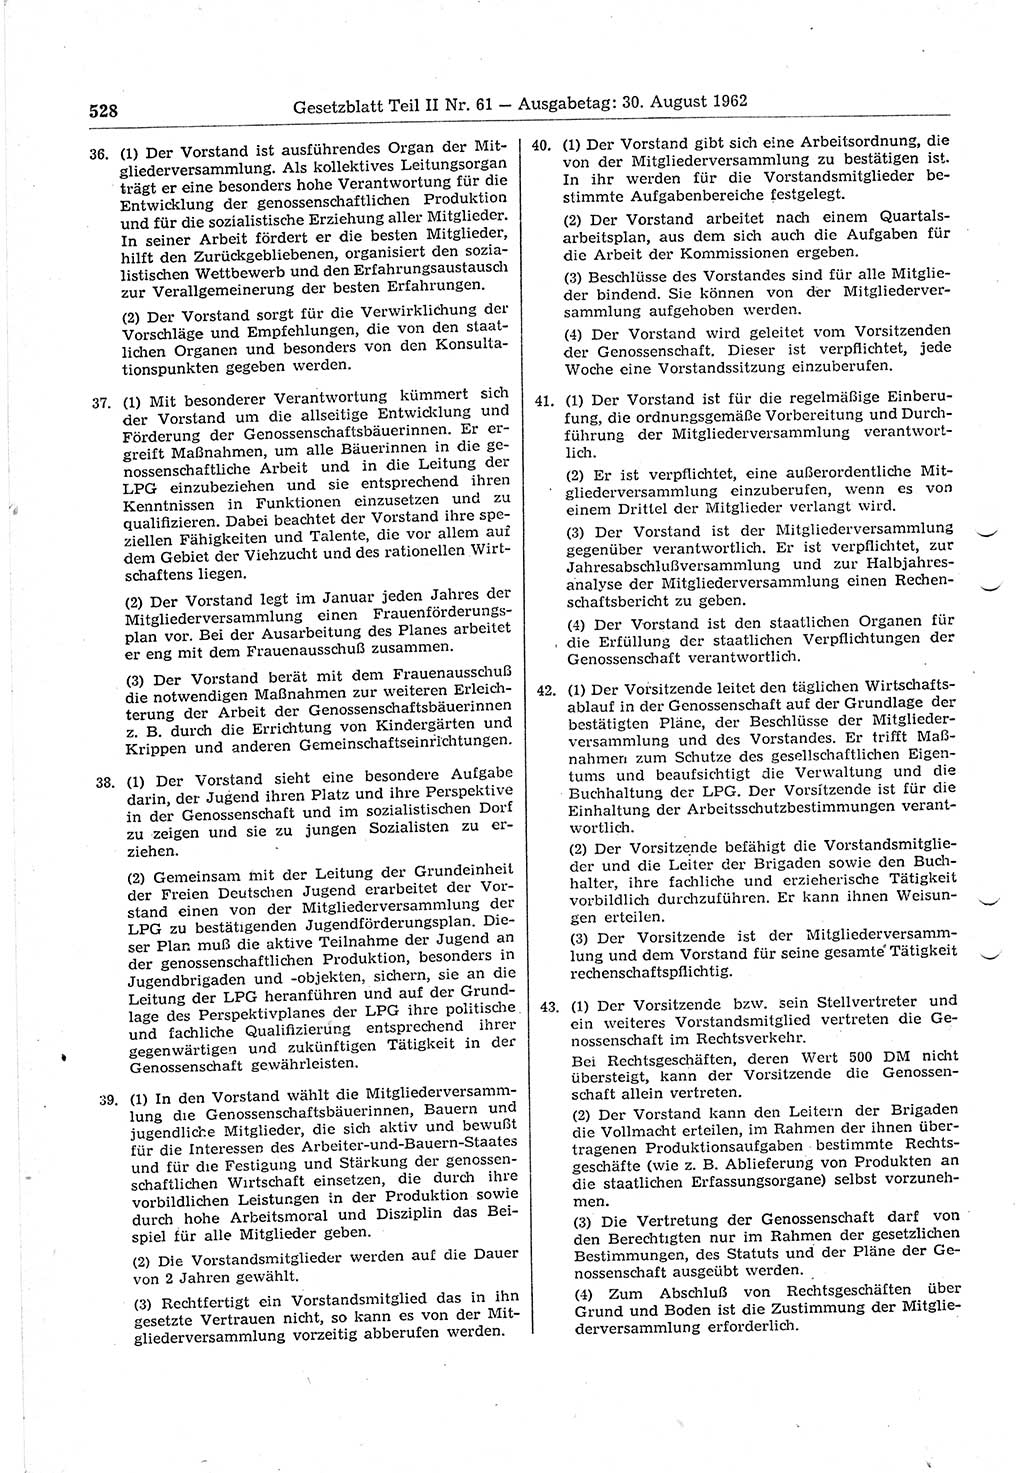 Gesetzblatt (GBl.) der Deutschen Demokratischen Republik (DDR) Teil ⅠⅠ 1962, Seite 528 (GBl. DDR ⅠⅠ 1962, S. 528)